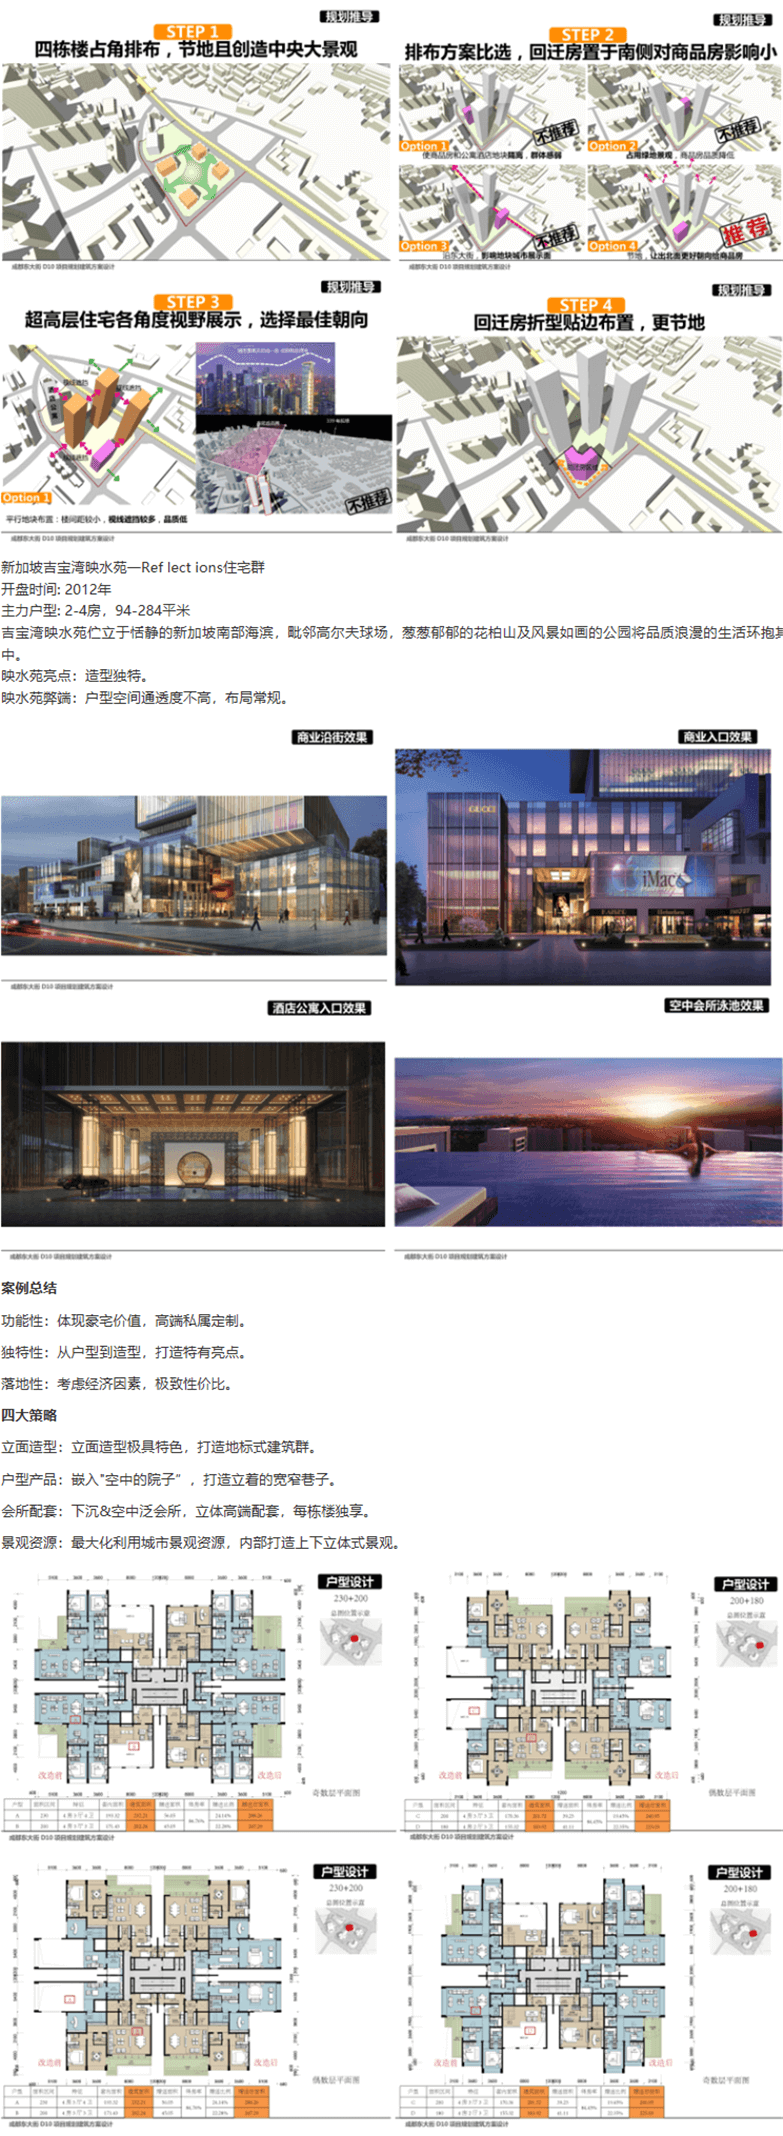 四川成都东大街居住区项目规划建筑方案文本-2